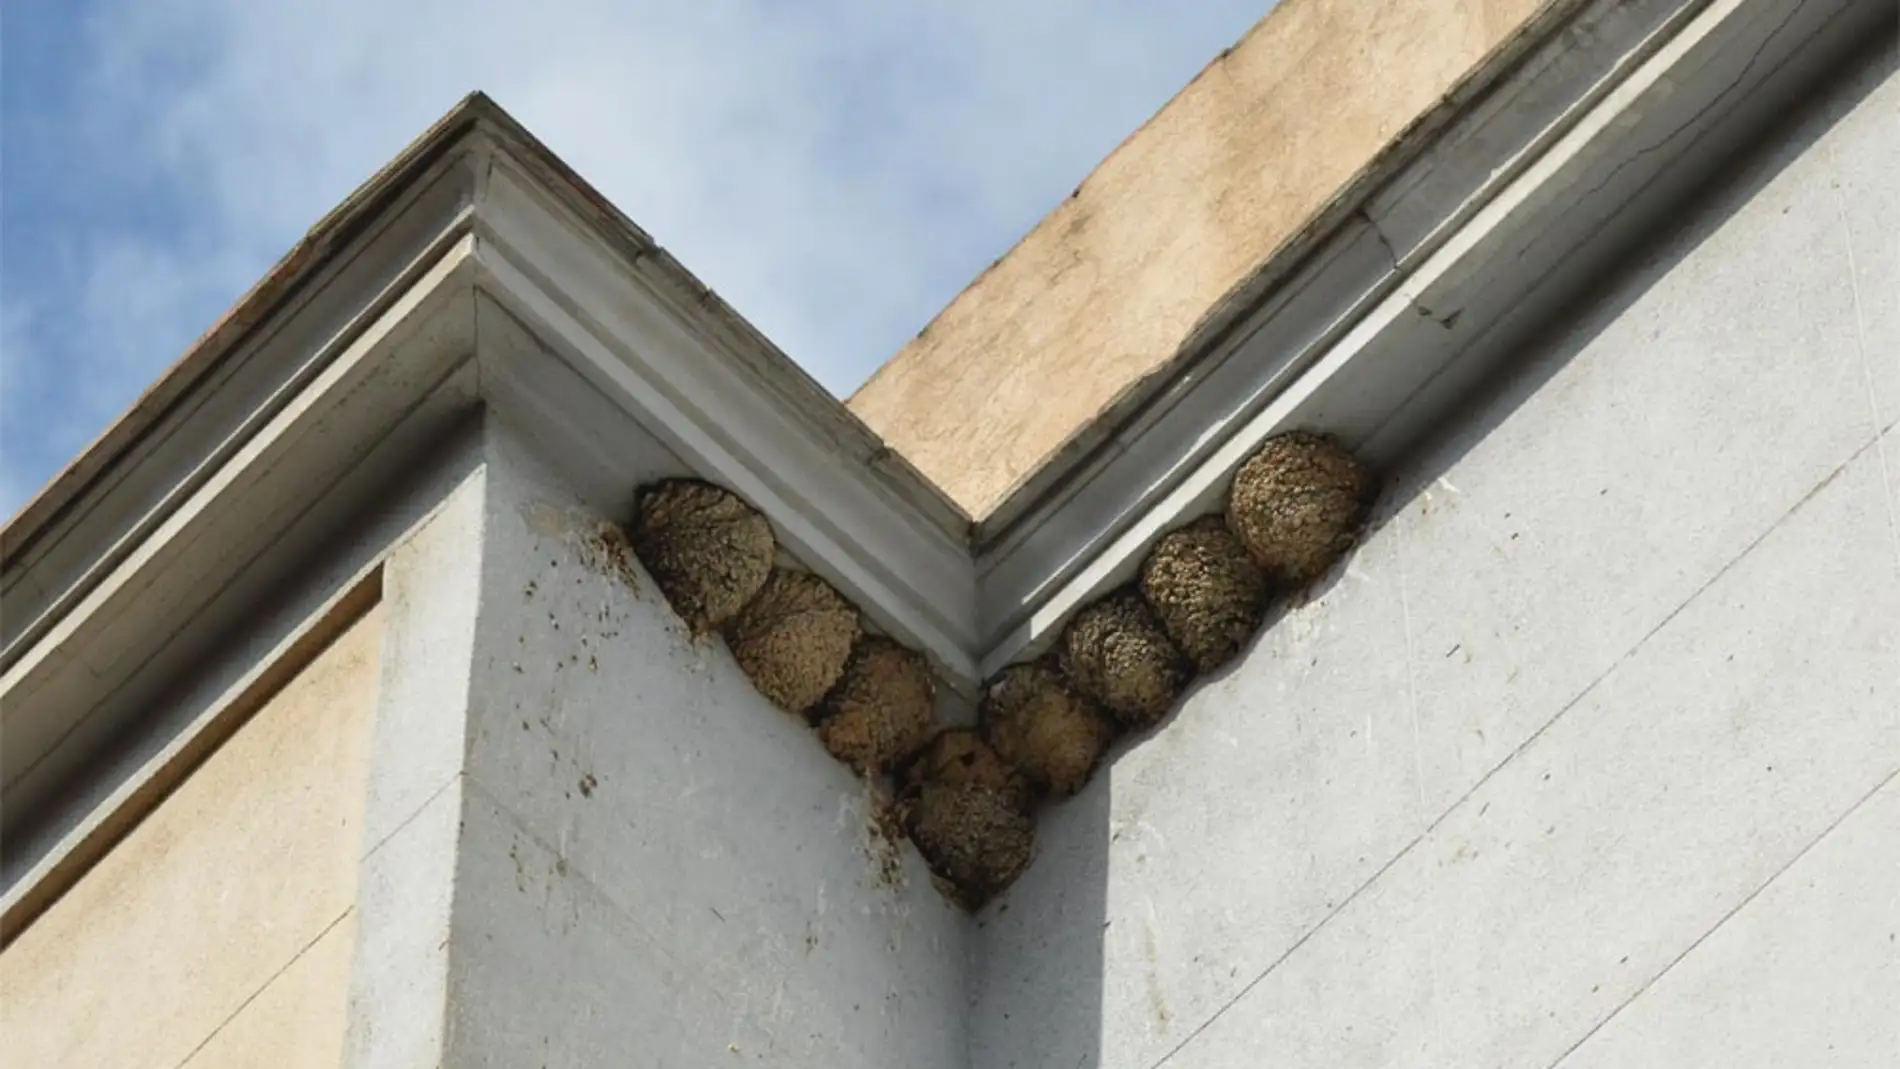 Una comunidad de vecinos de Cáceres se enfrenta a una pena de cárcel por destruir una colonia de aves